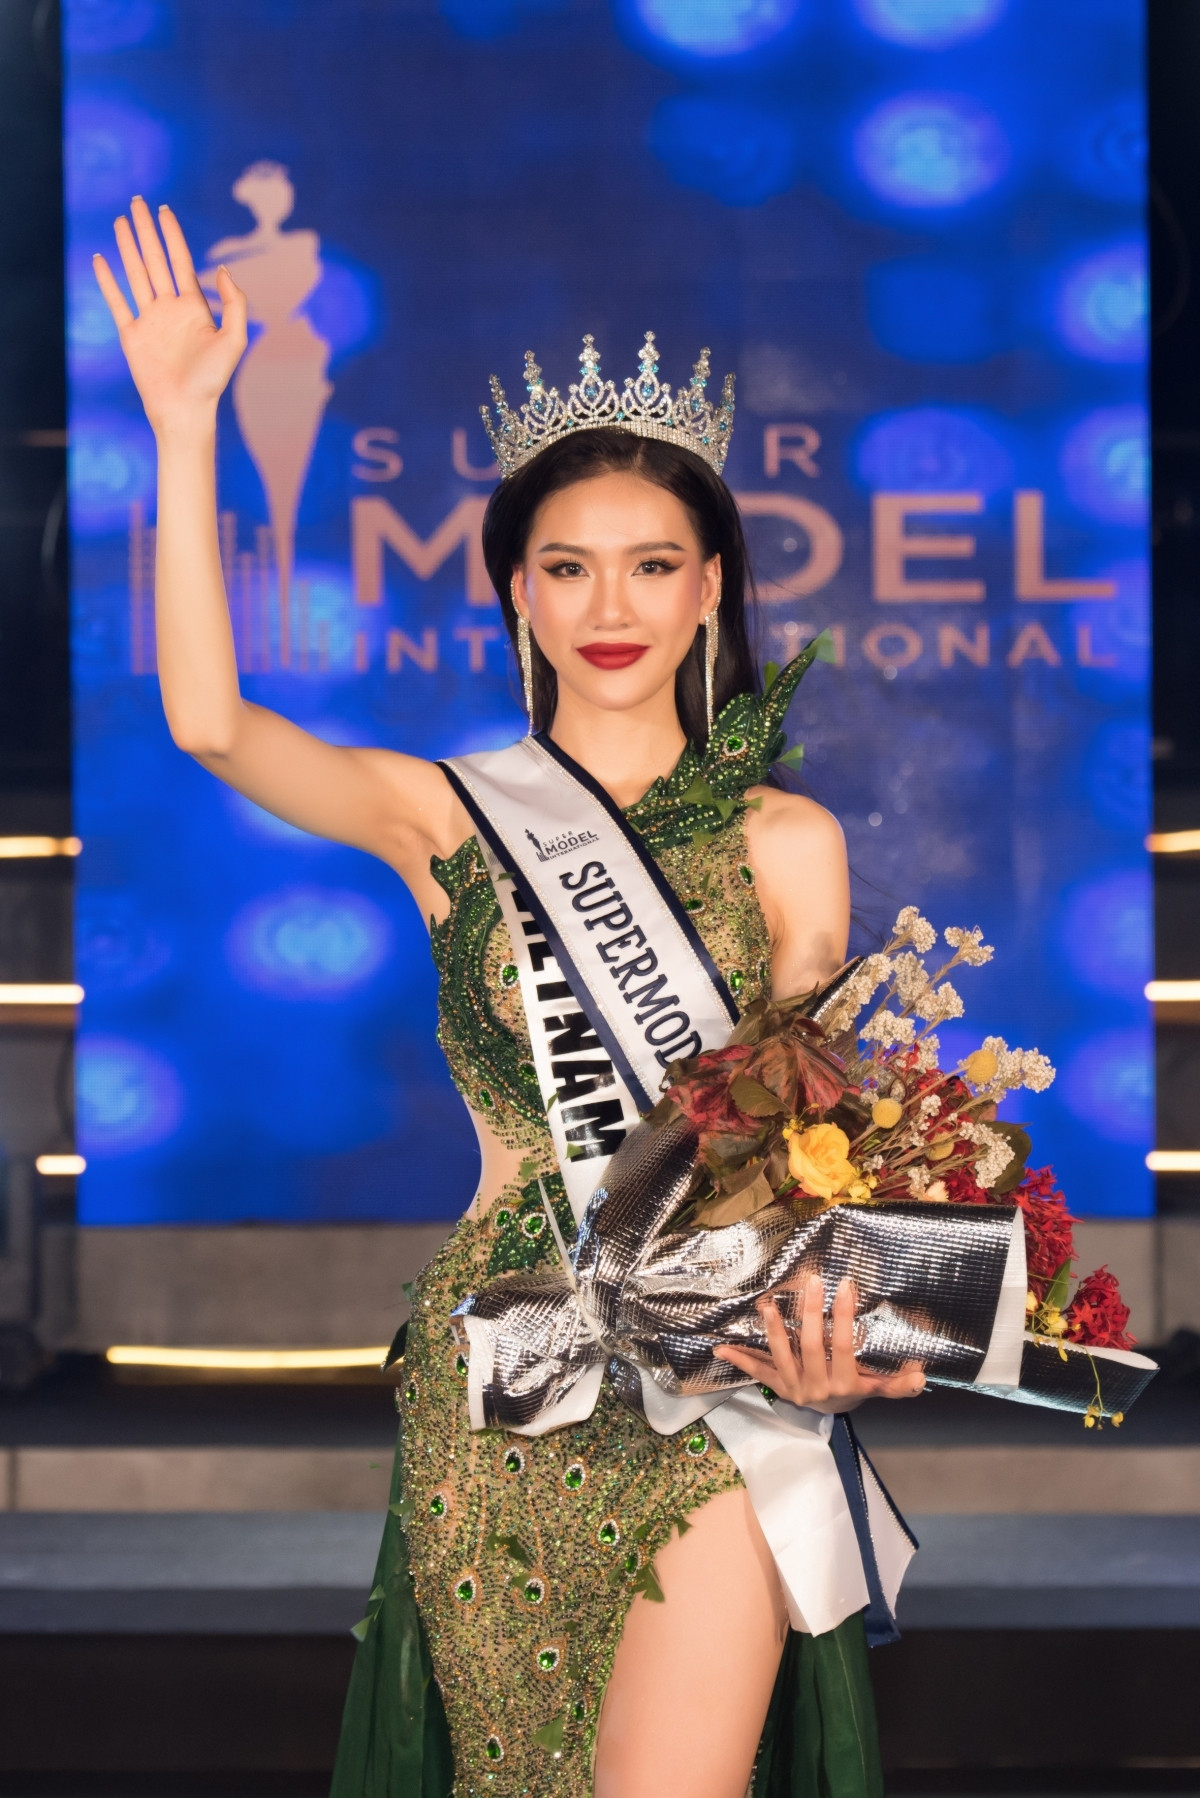 quynh hoa named winner of supermodel international 2022 picture 1